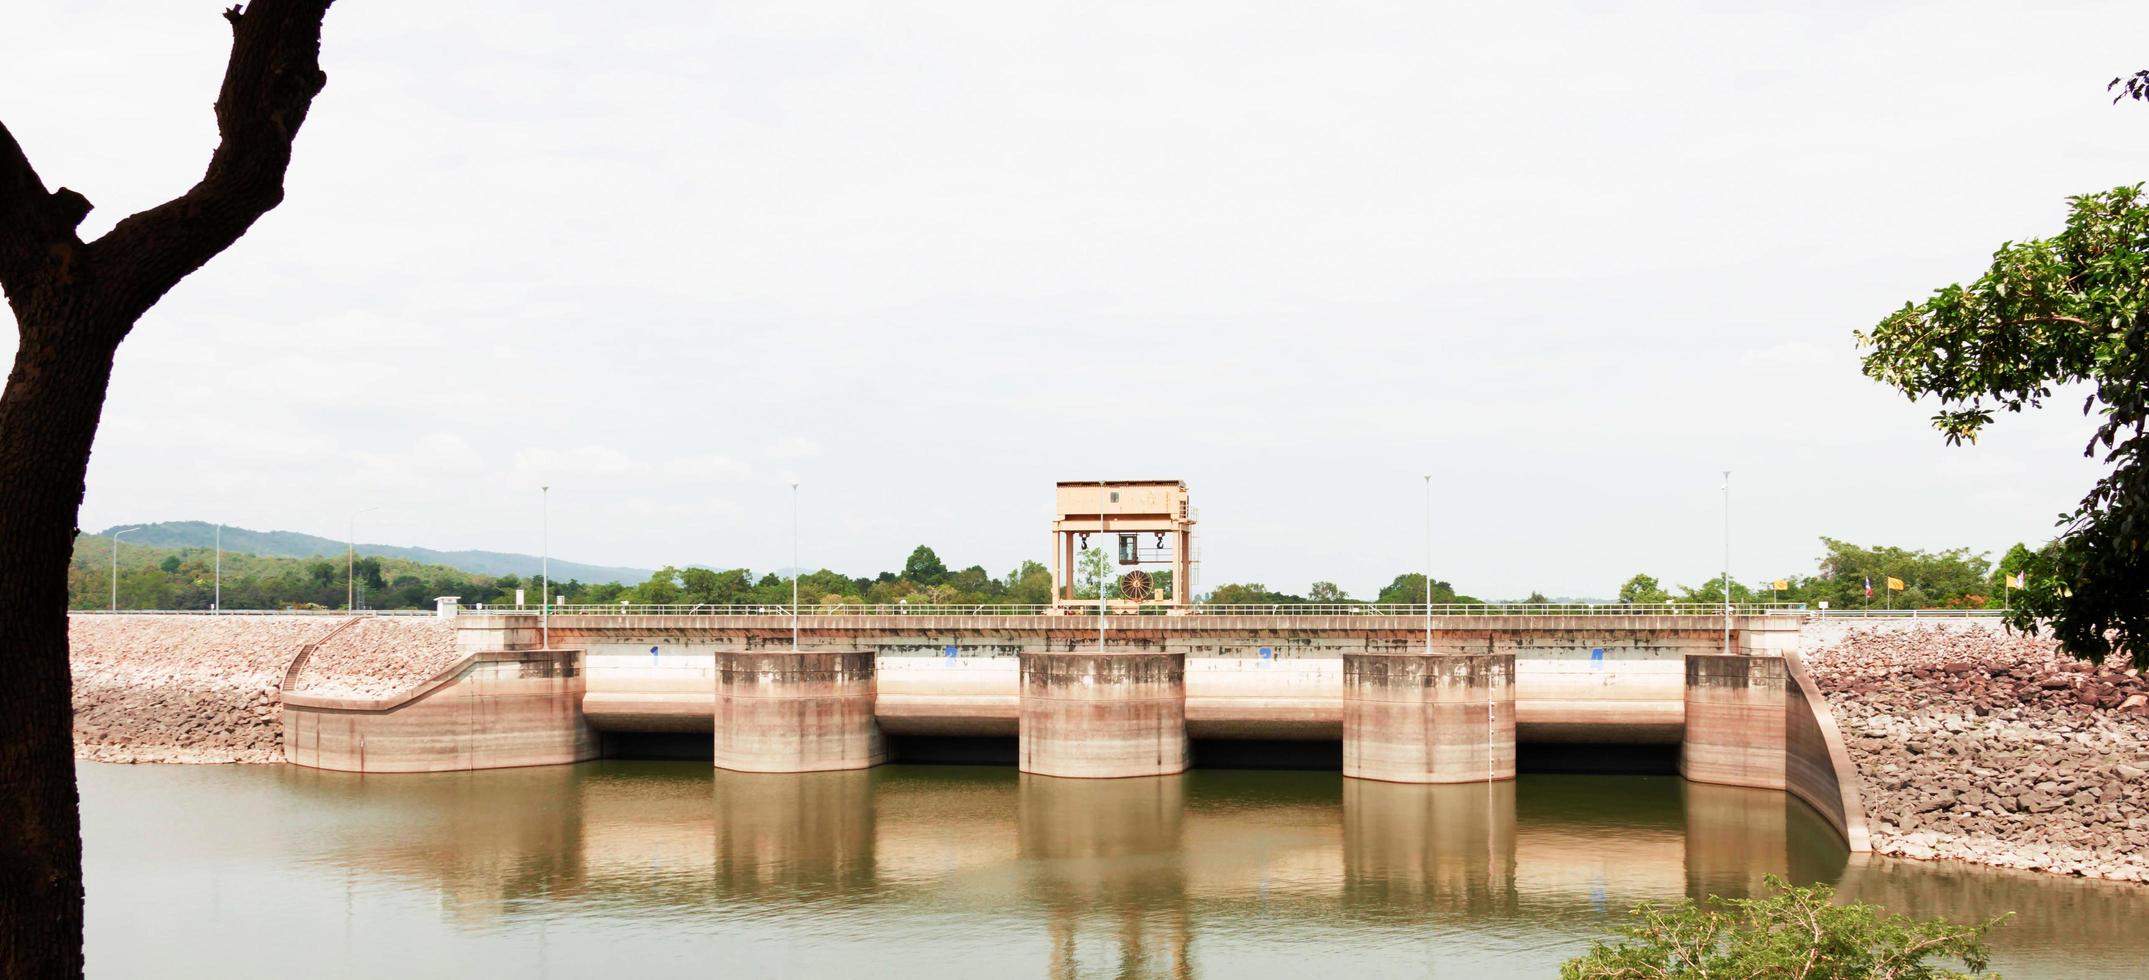 pont de barrage sur l'eau photo